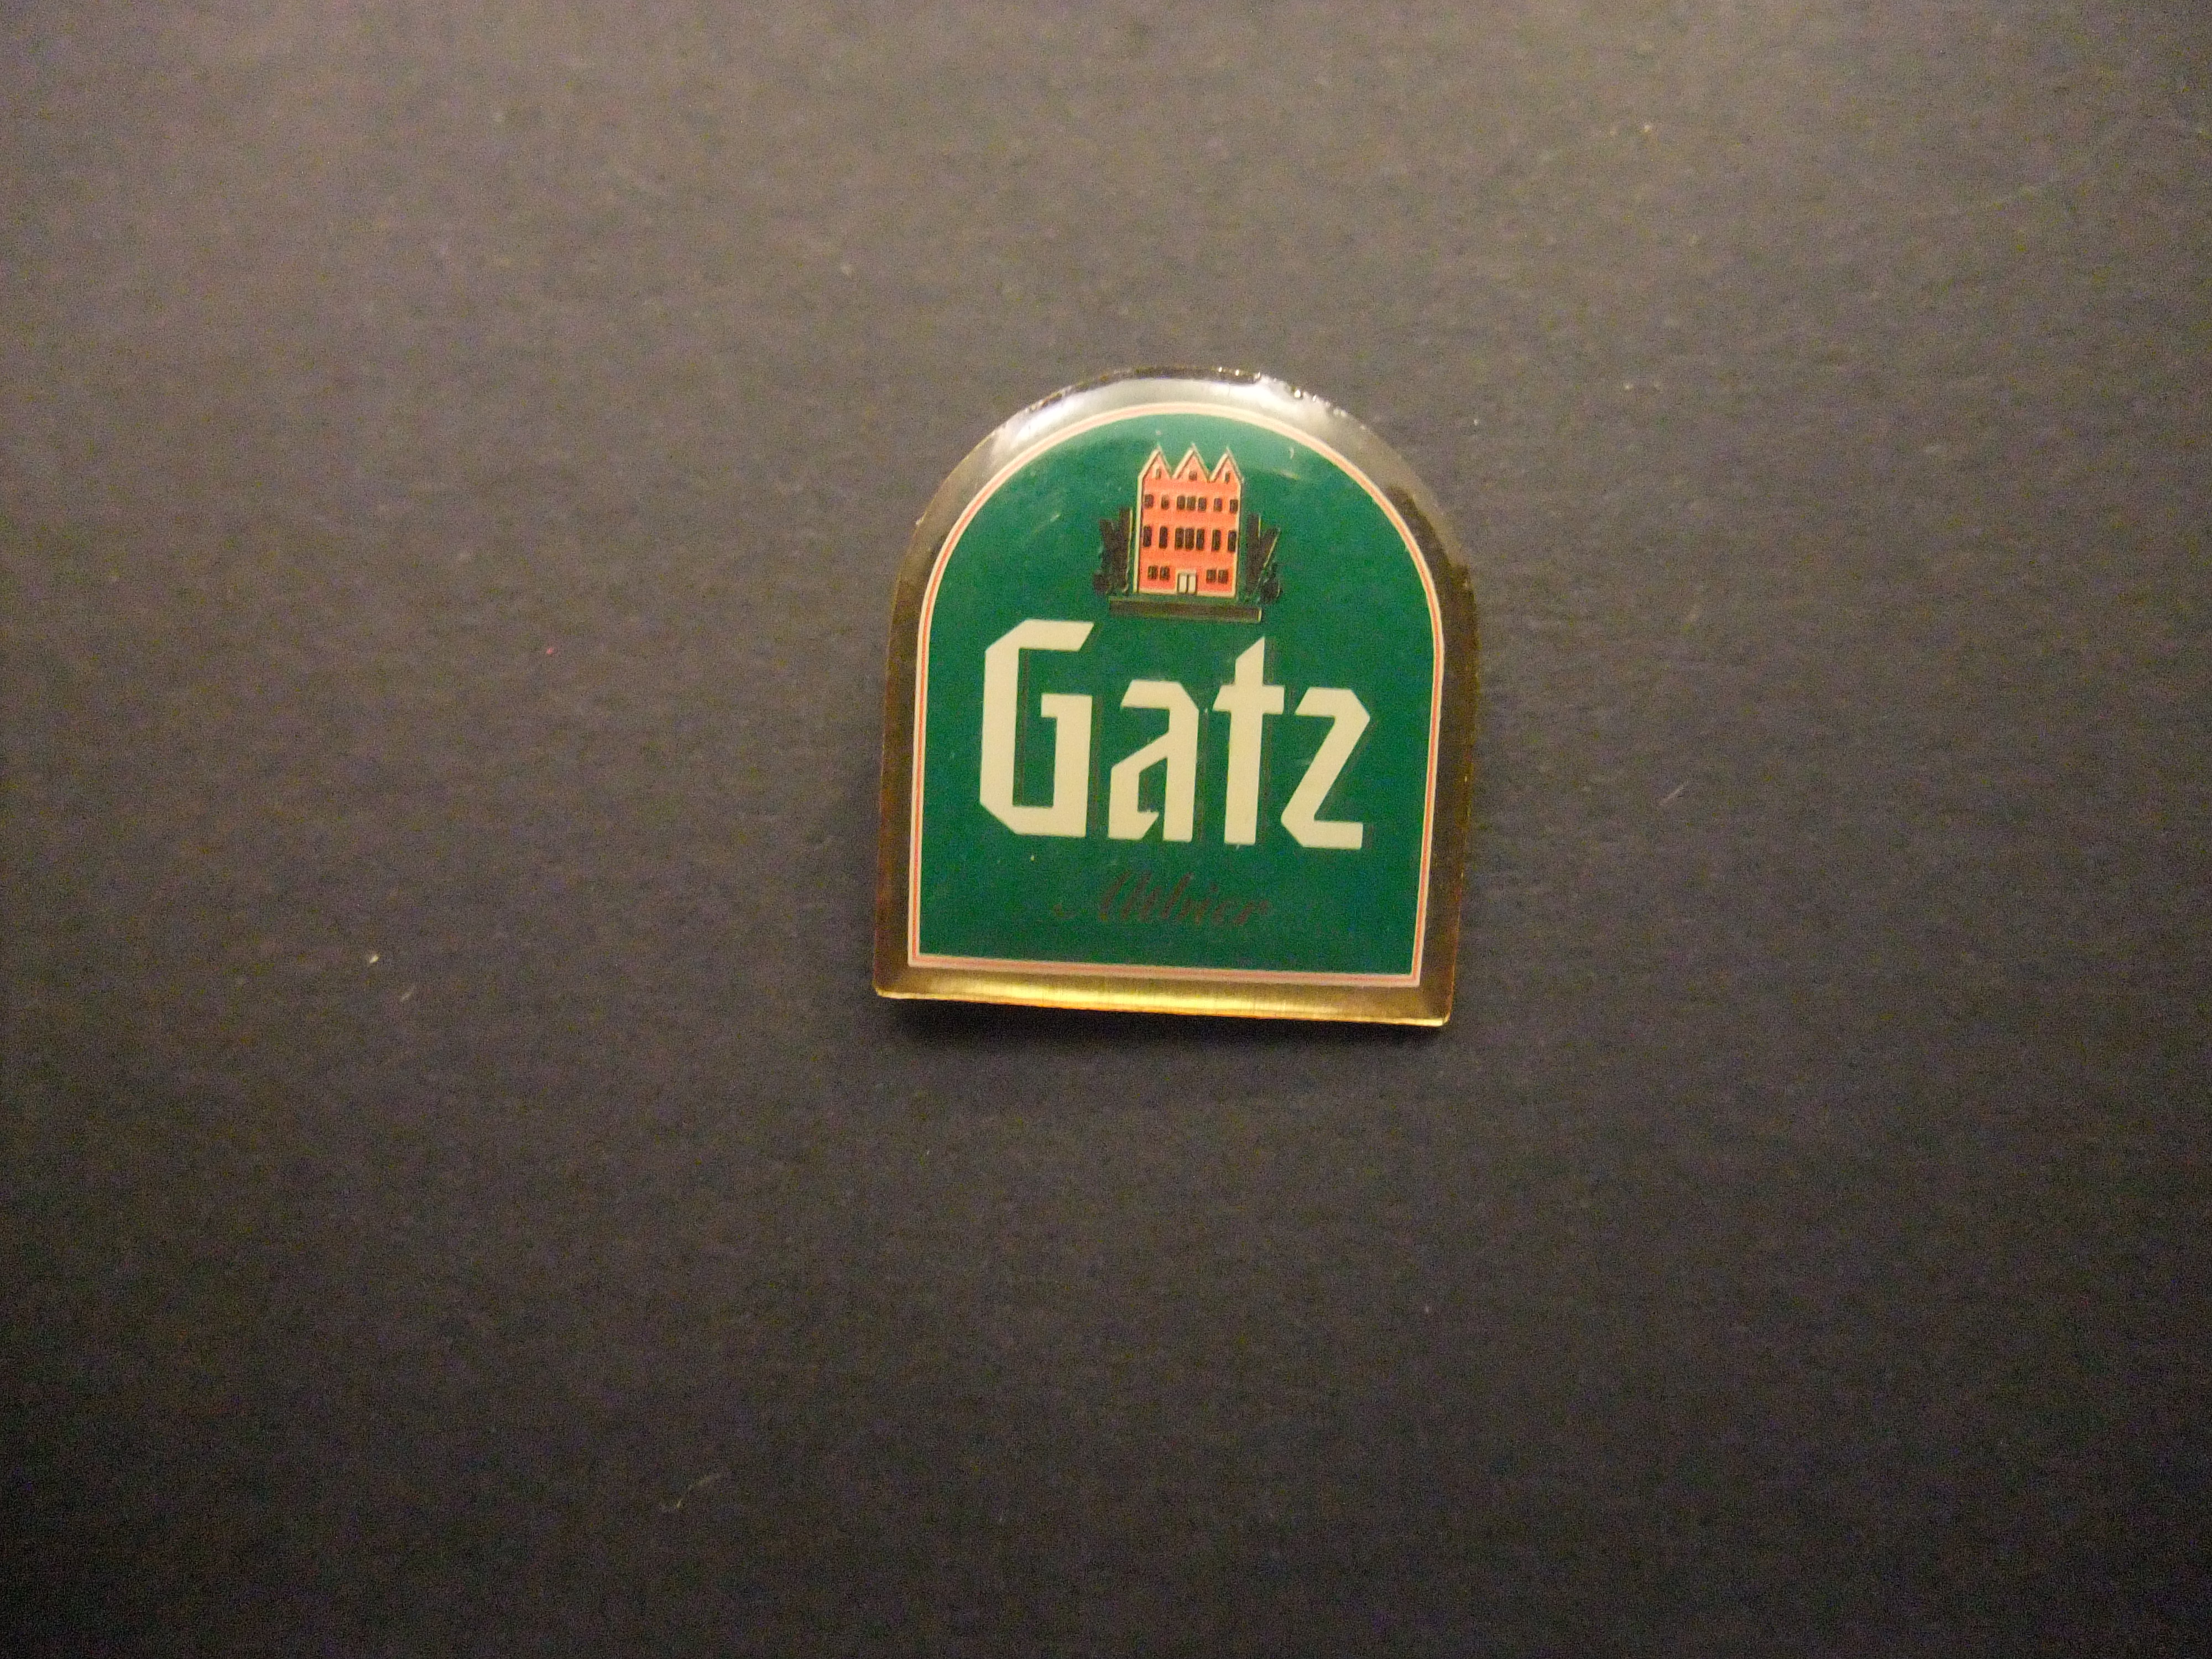 Gatz Altbier Duits bier ( Dusseldorf) door Carlsberg op de markt gebracht